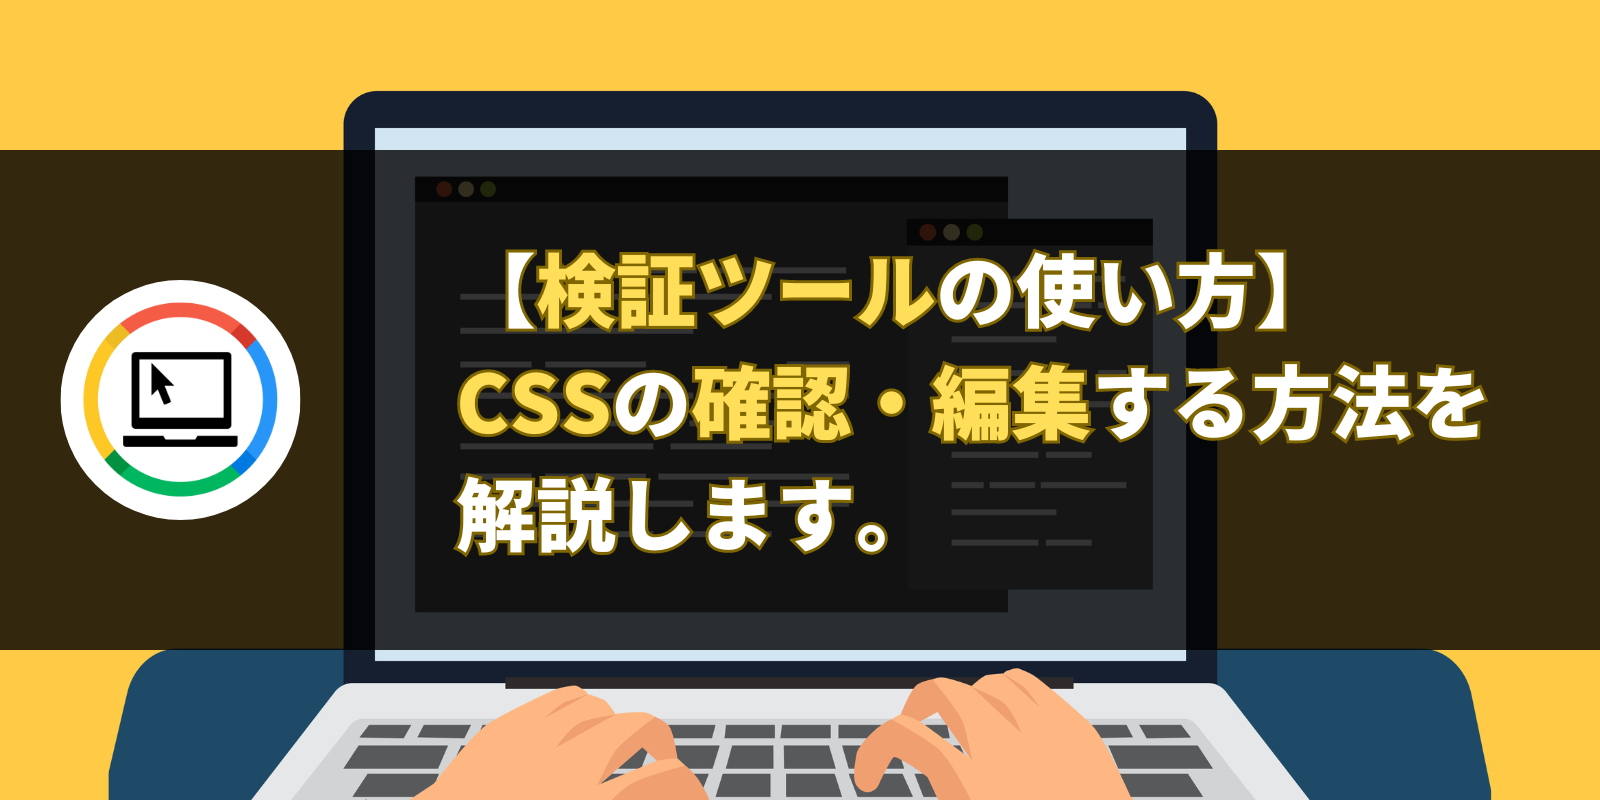 【検証ツールの使い方】CSSの確認・編集する方法を解説します。